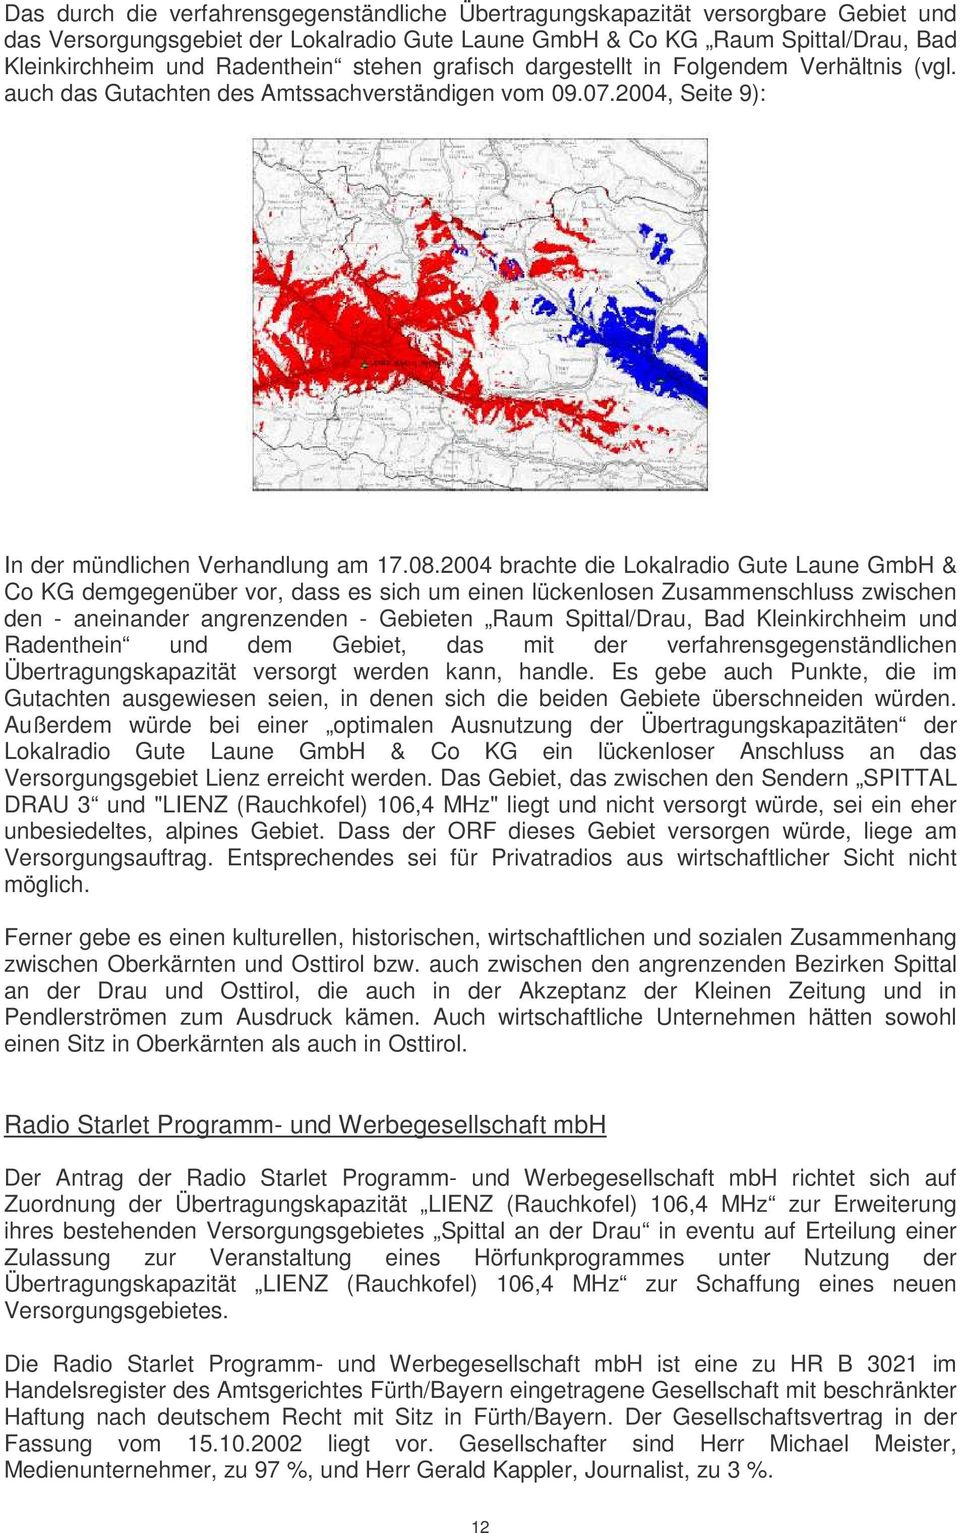 2004 brachte die Lokalradio Gute Laune GmbH & Co KG demgegenüber vor, dass es sich um einen lückenlosen Zusammenschluss zwischen den - aneinander angrenzenden - Gebieten Raum Spittal/Drau, Bad